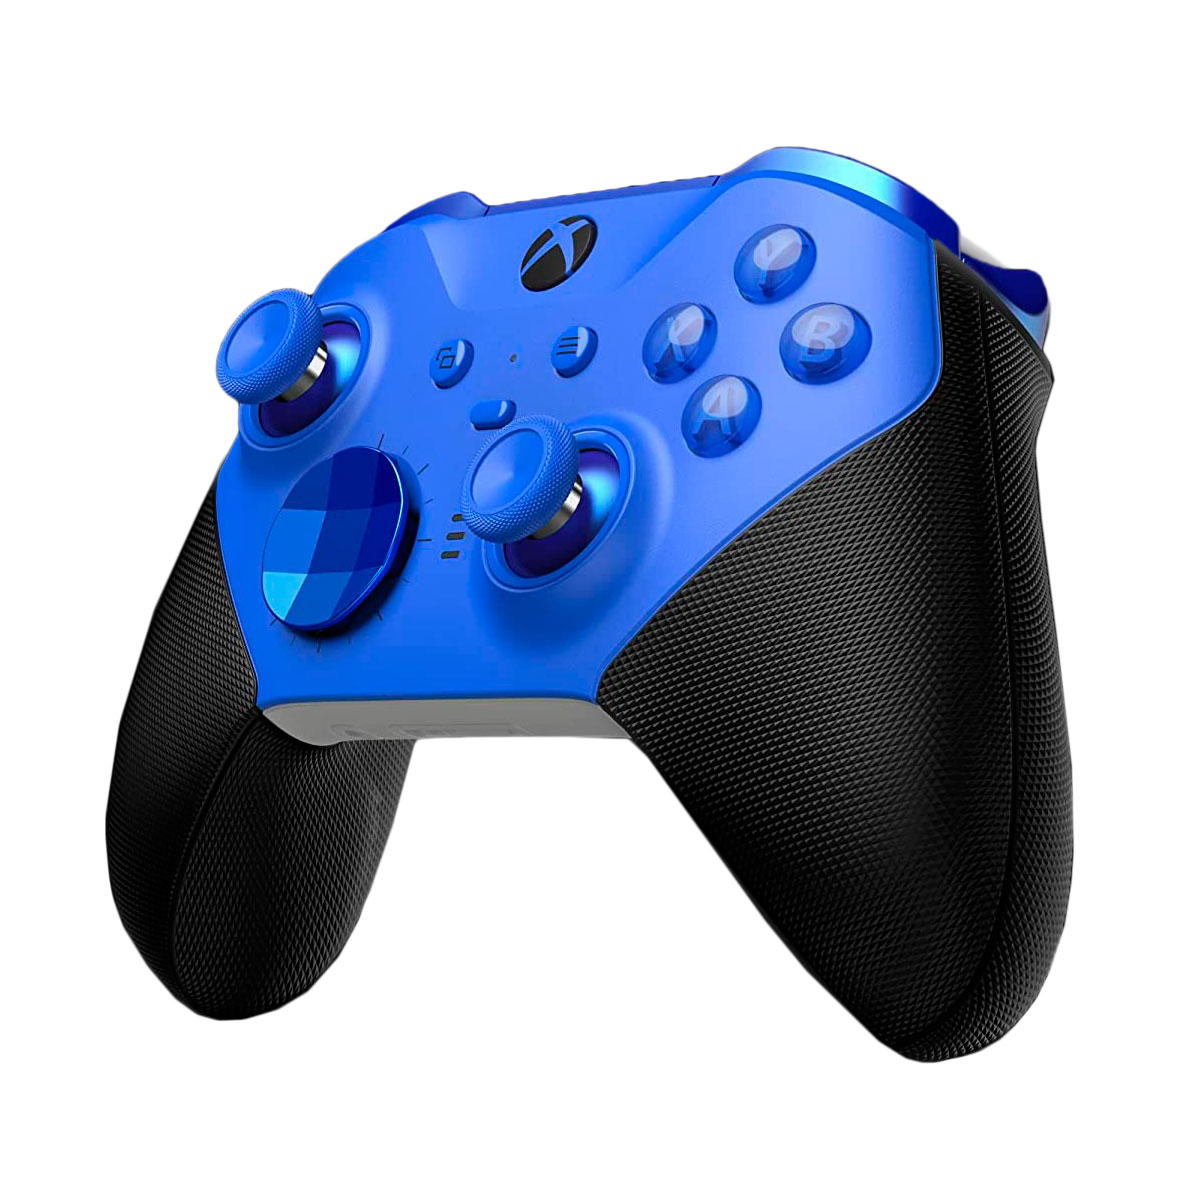 Беспроводной геймпад Microsoft Xbox Elite Series 2, синий/черный беспроводной геймпад microsoft xbox usa spec черный qat 0001